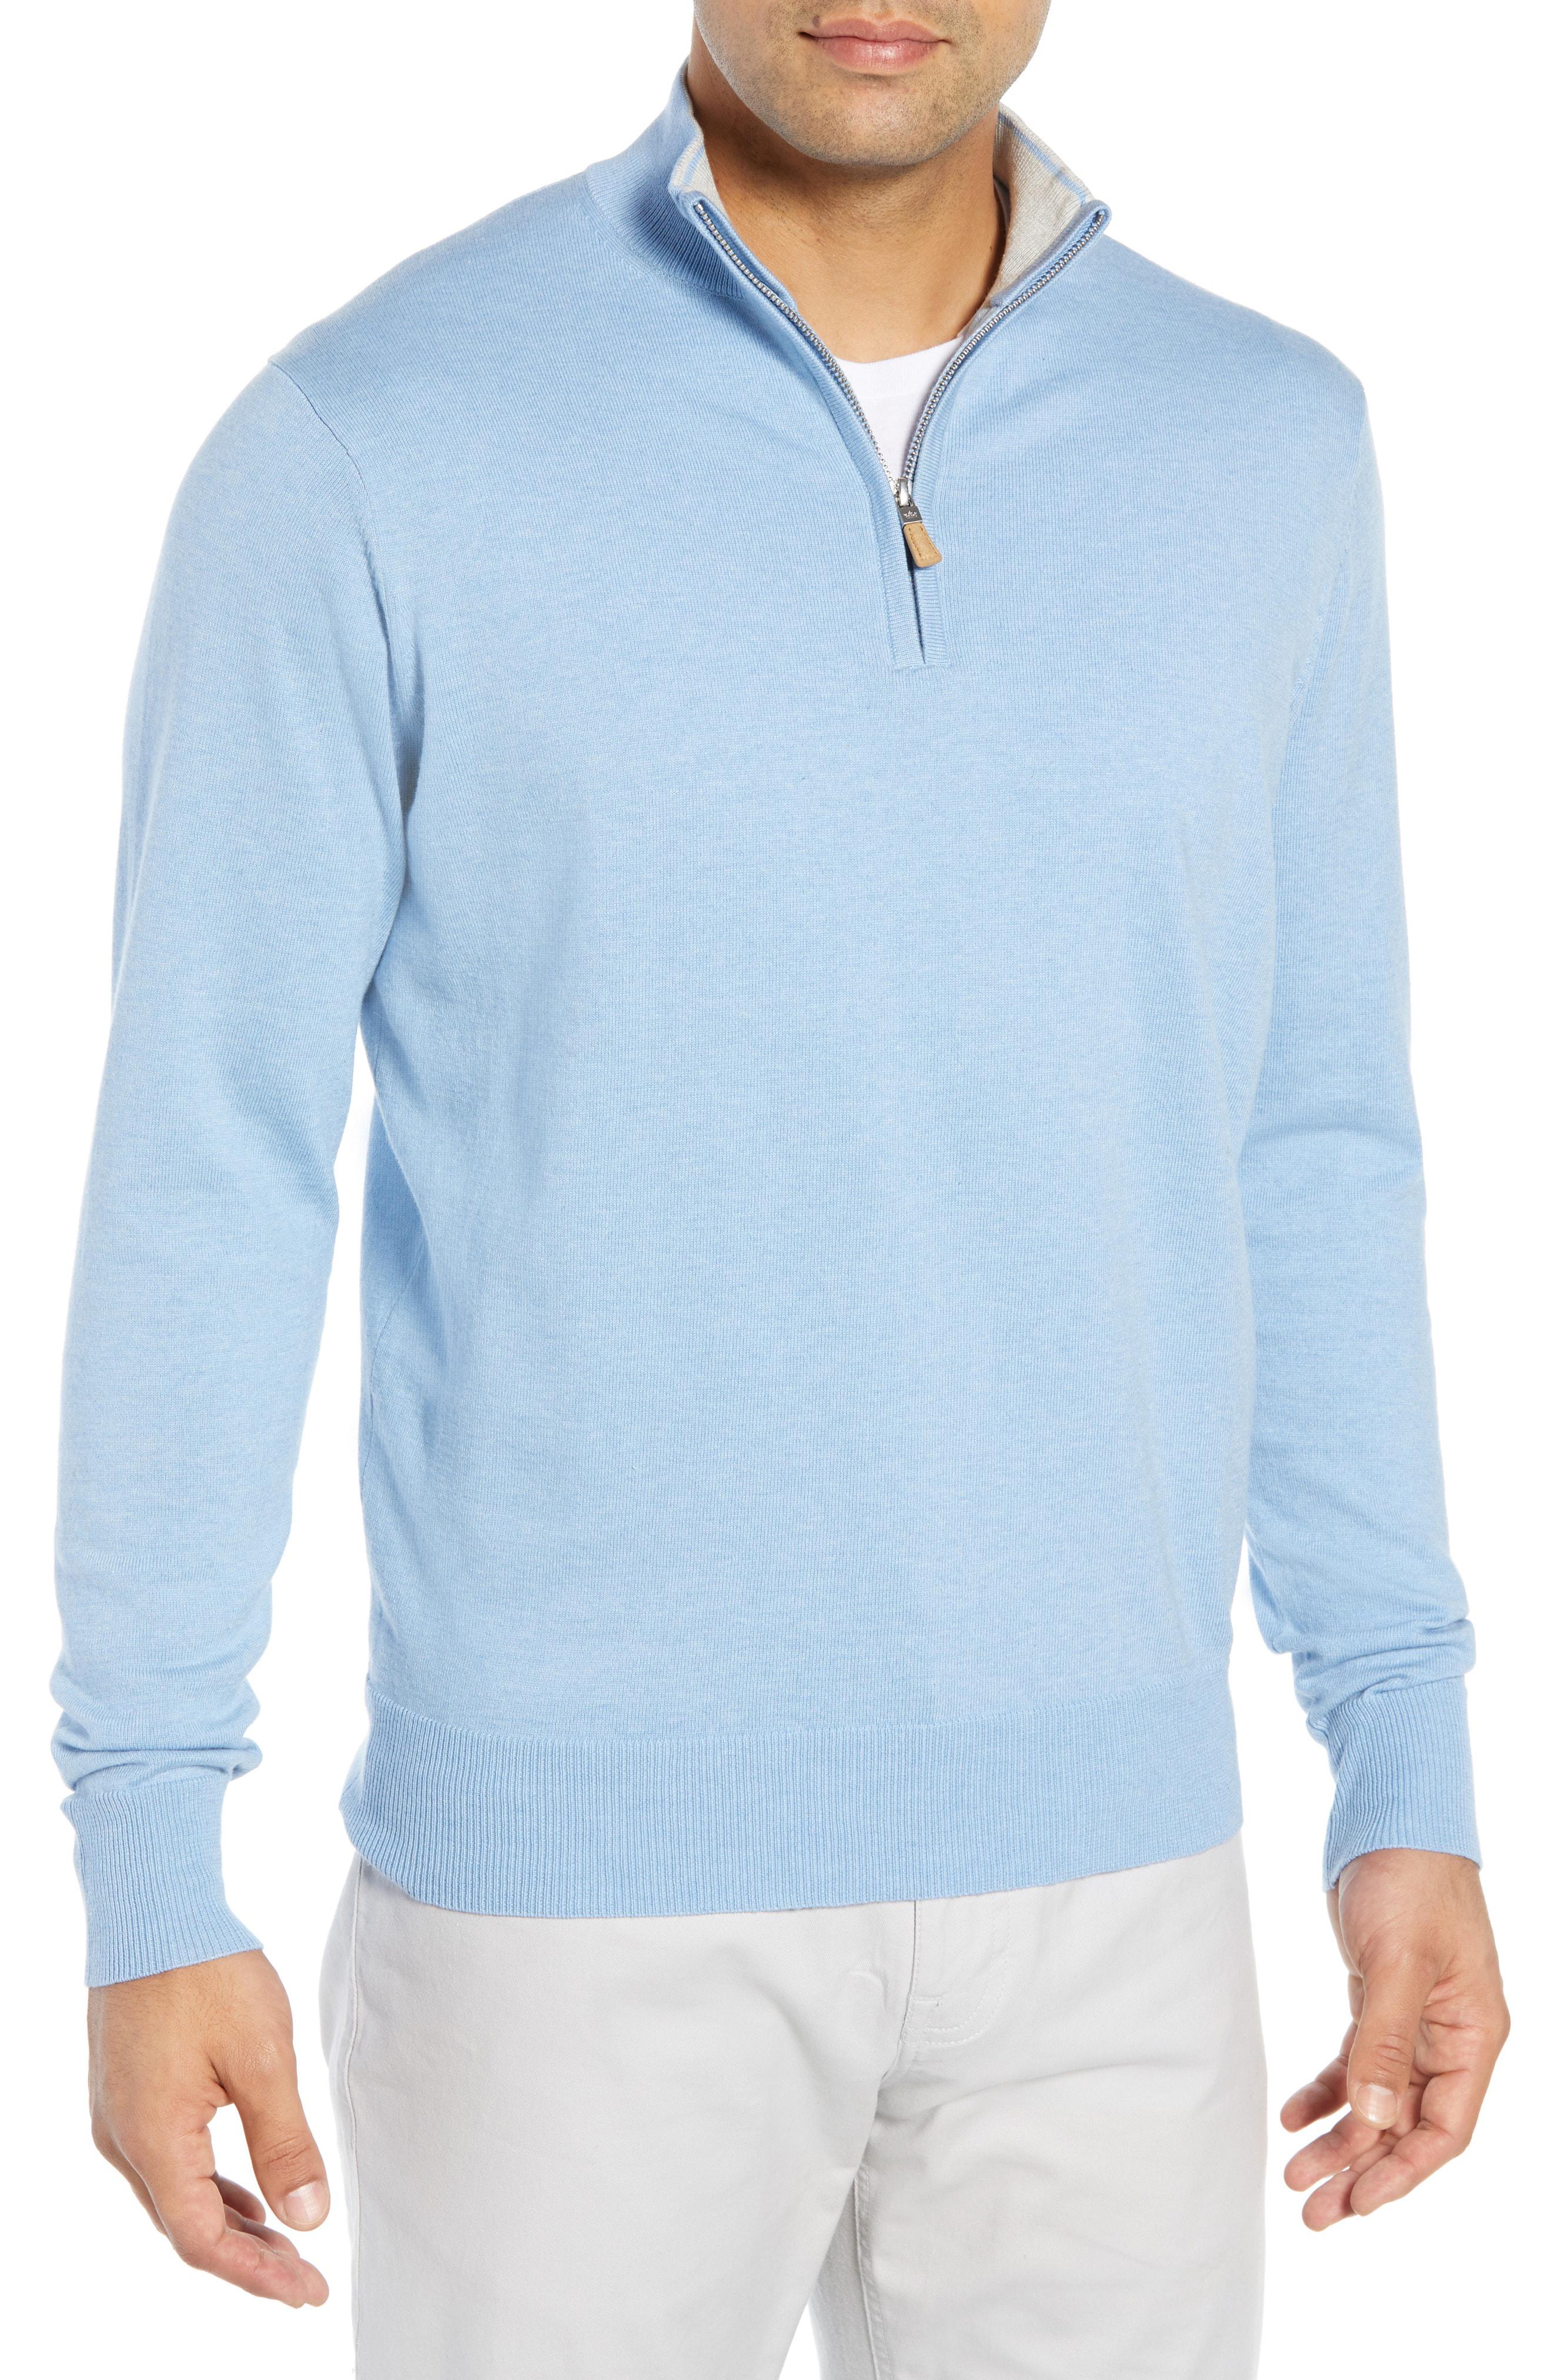 Lyst - Peter Millar Crown Quarter Zip Sweater in Blue for Men